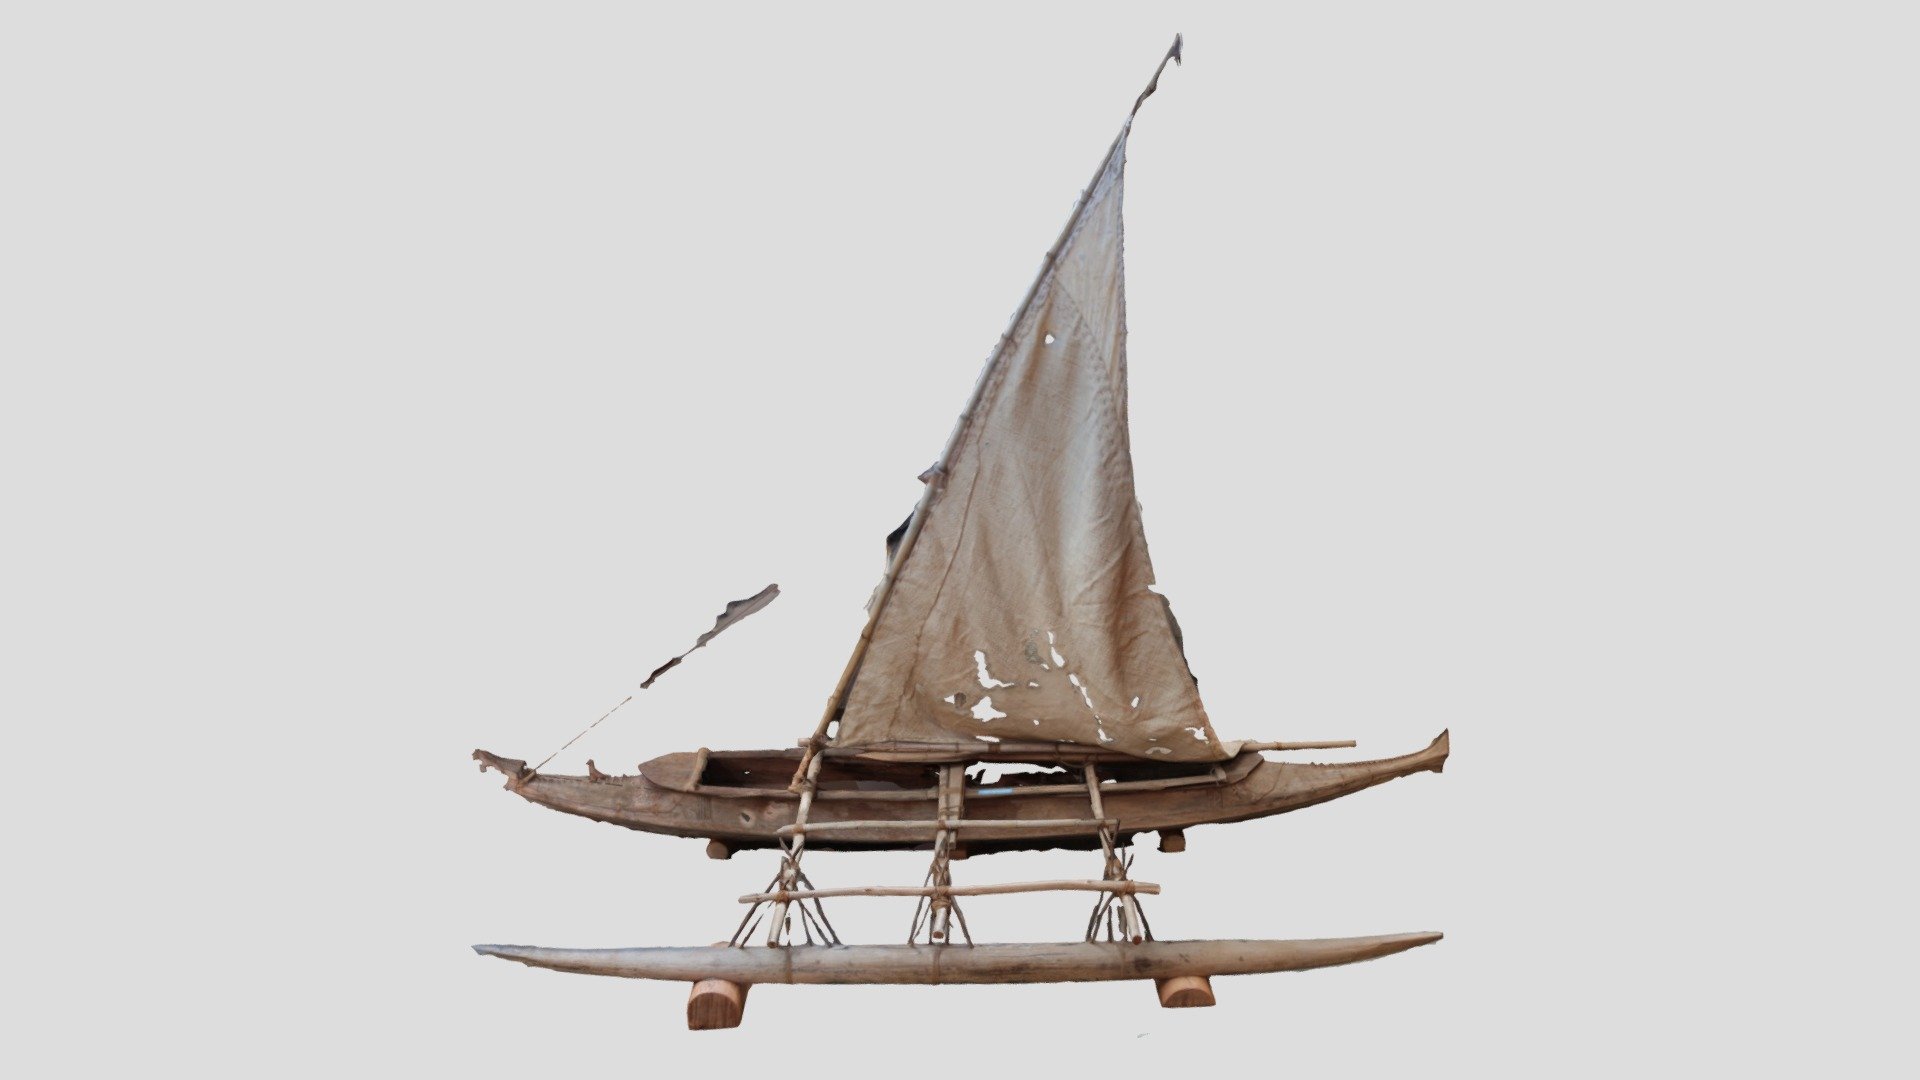 Anutan sailing canoe "Turuturukiteniu"